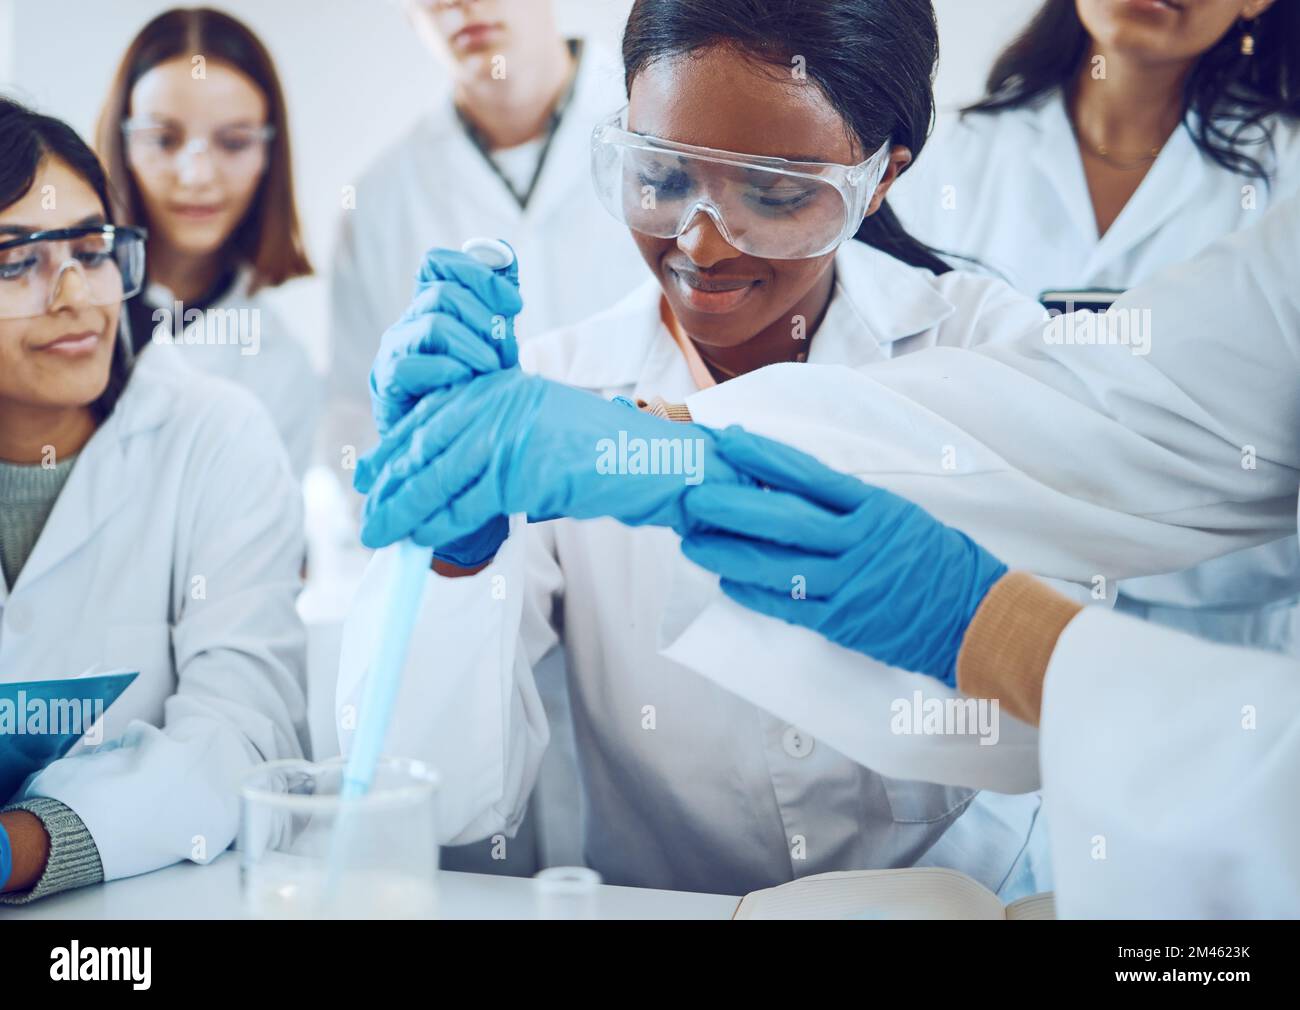 Wissenschaft, Teamarbeit und Studenten Chemische Experimente oder Demonstrationen im Labor für Innovationen im Gesundheitswesen oder College-Prüfungen. Wissenschaftler, medizinisches Team Stockfoto